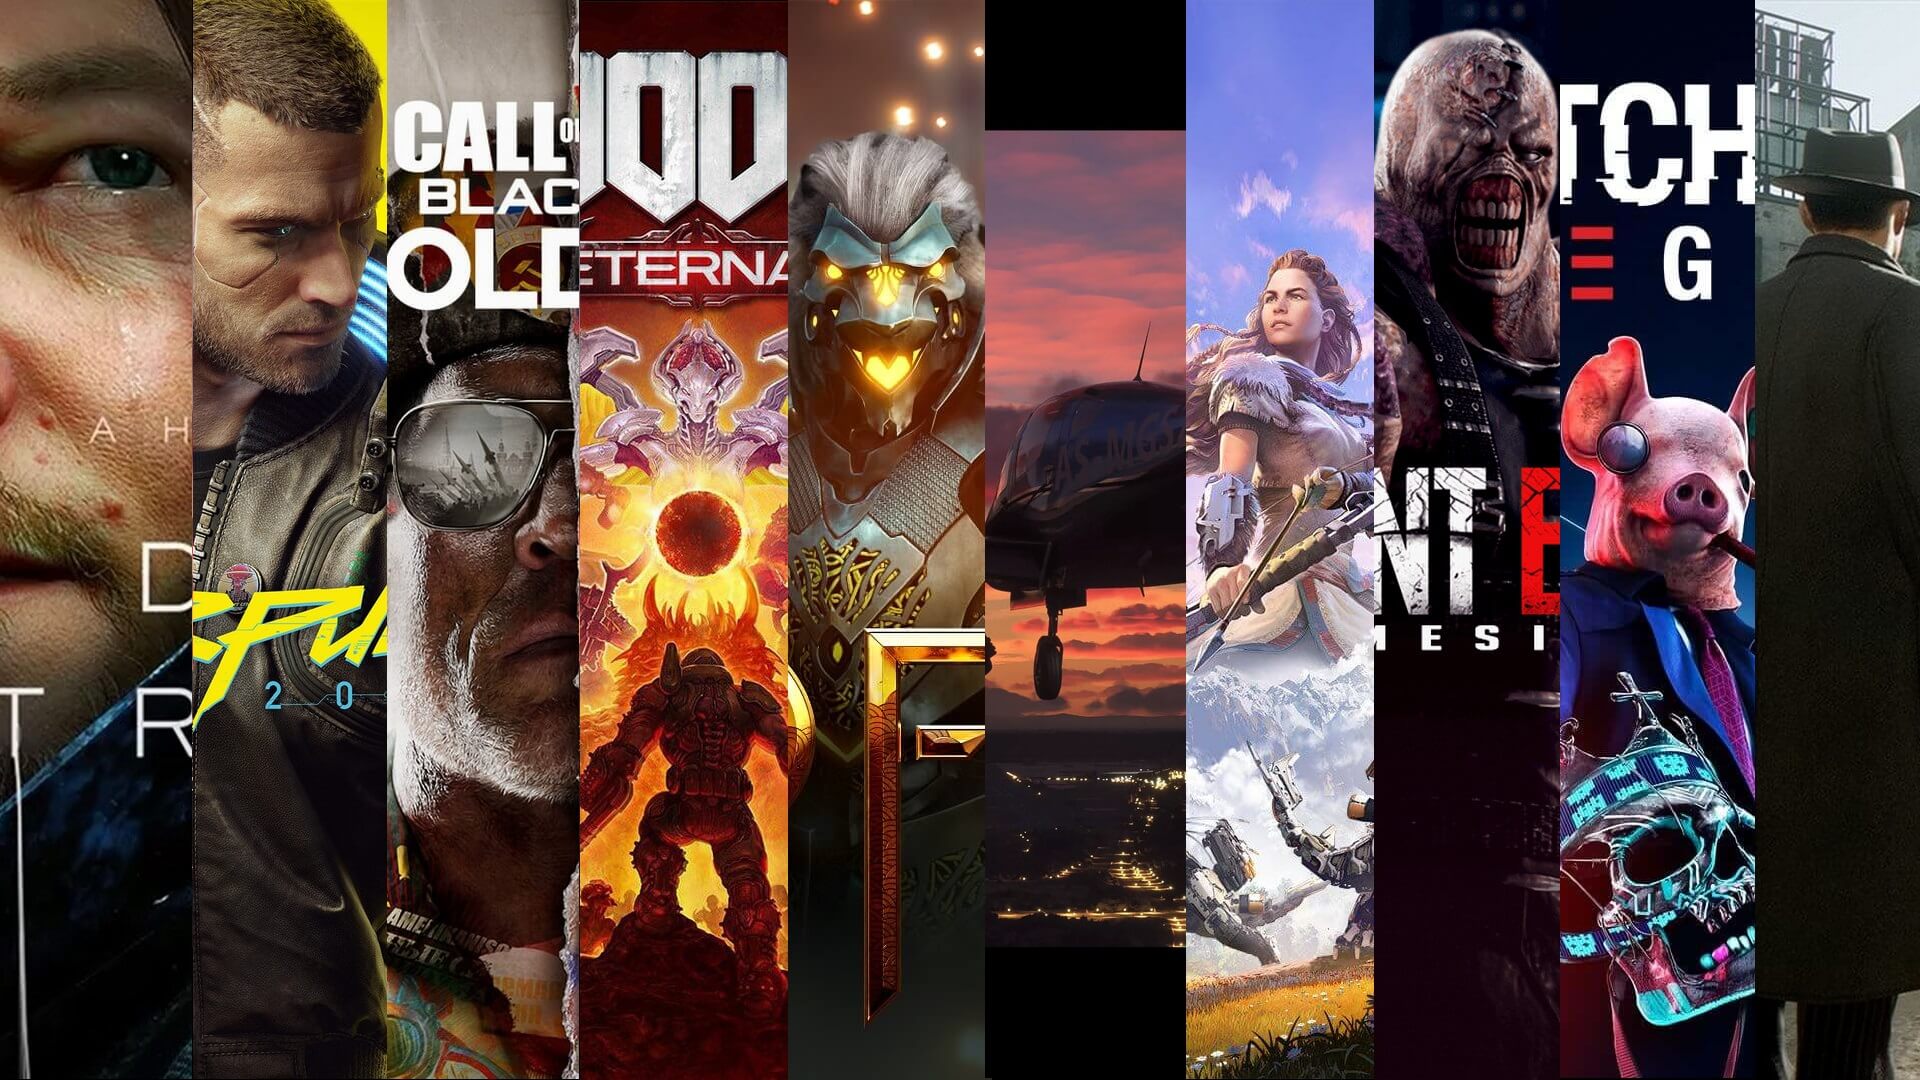 aan de andere kant, Monet Geven Top 10 Best PC Games Graphics of 2020